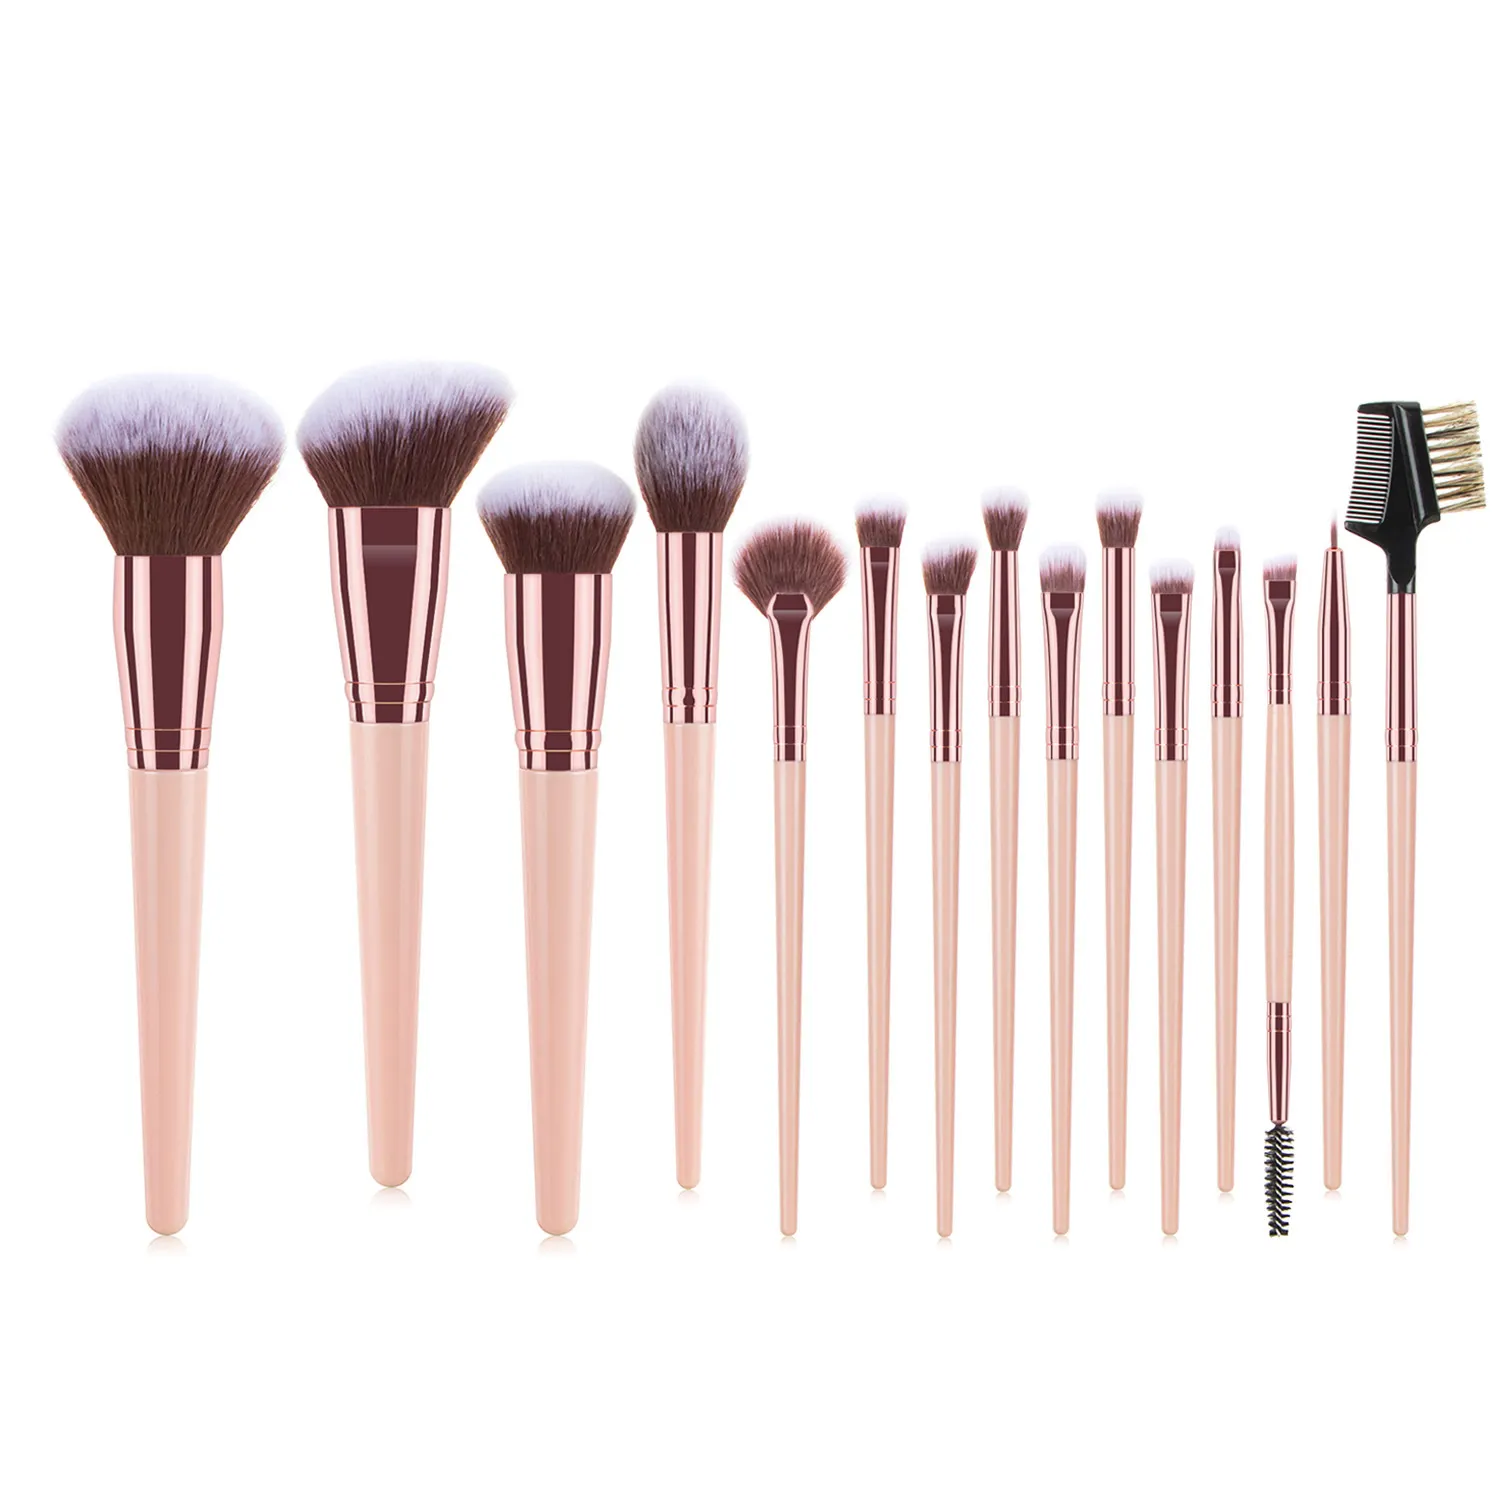 Newest design pink makeup brush vegan other bling makeup brush set for woman makeup